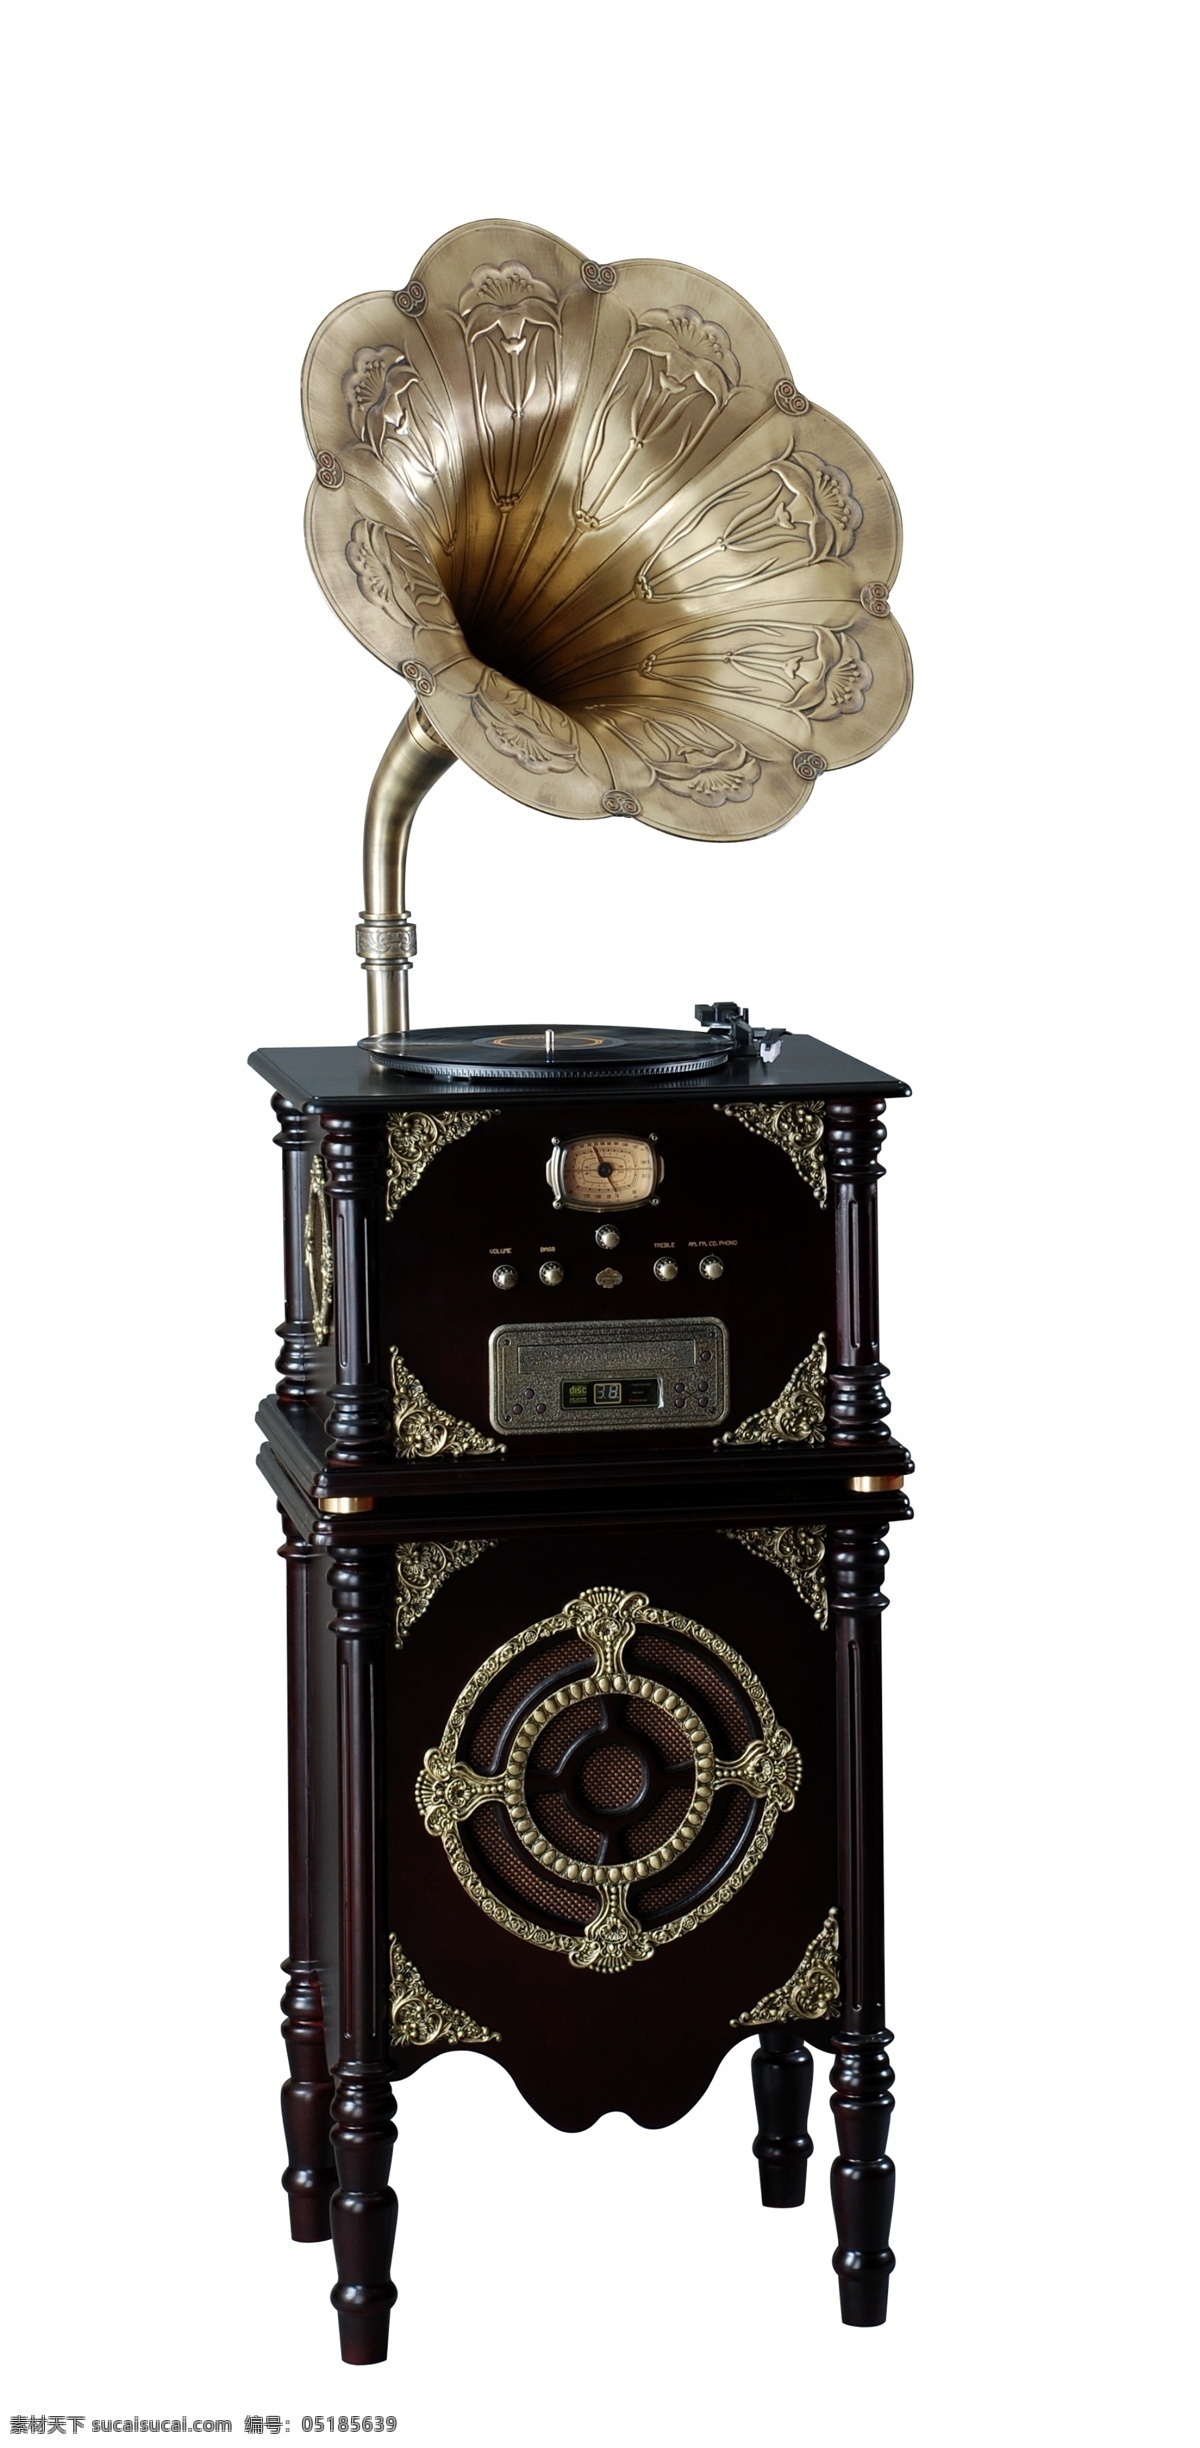 黑色留声机 黑色经典 留声机 电唱机 扬声器 怀旧经典 老式 分层 欧式留声机 高清留声机图 大喇叭 黑色 木制留声机 源文件